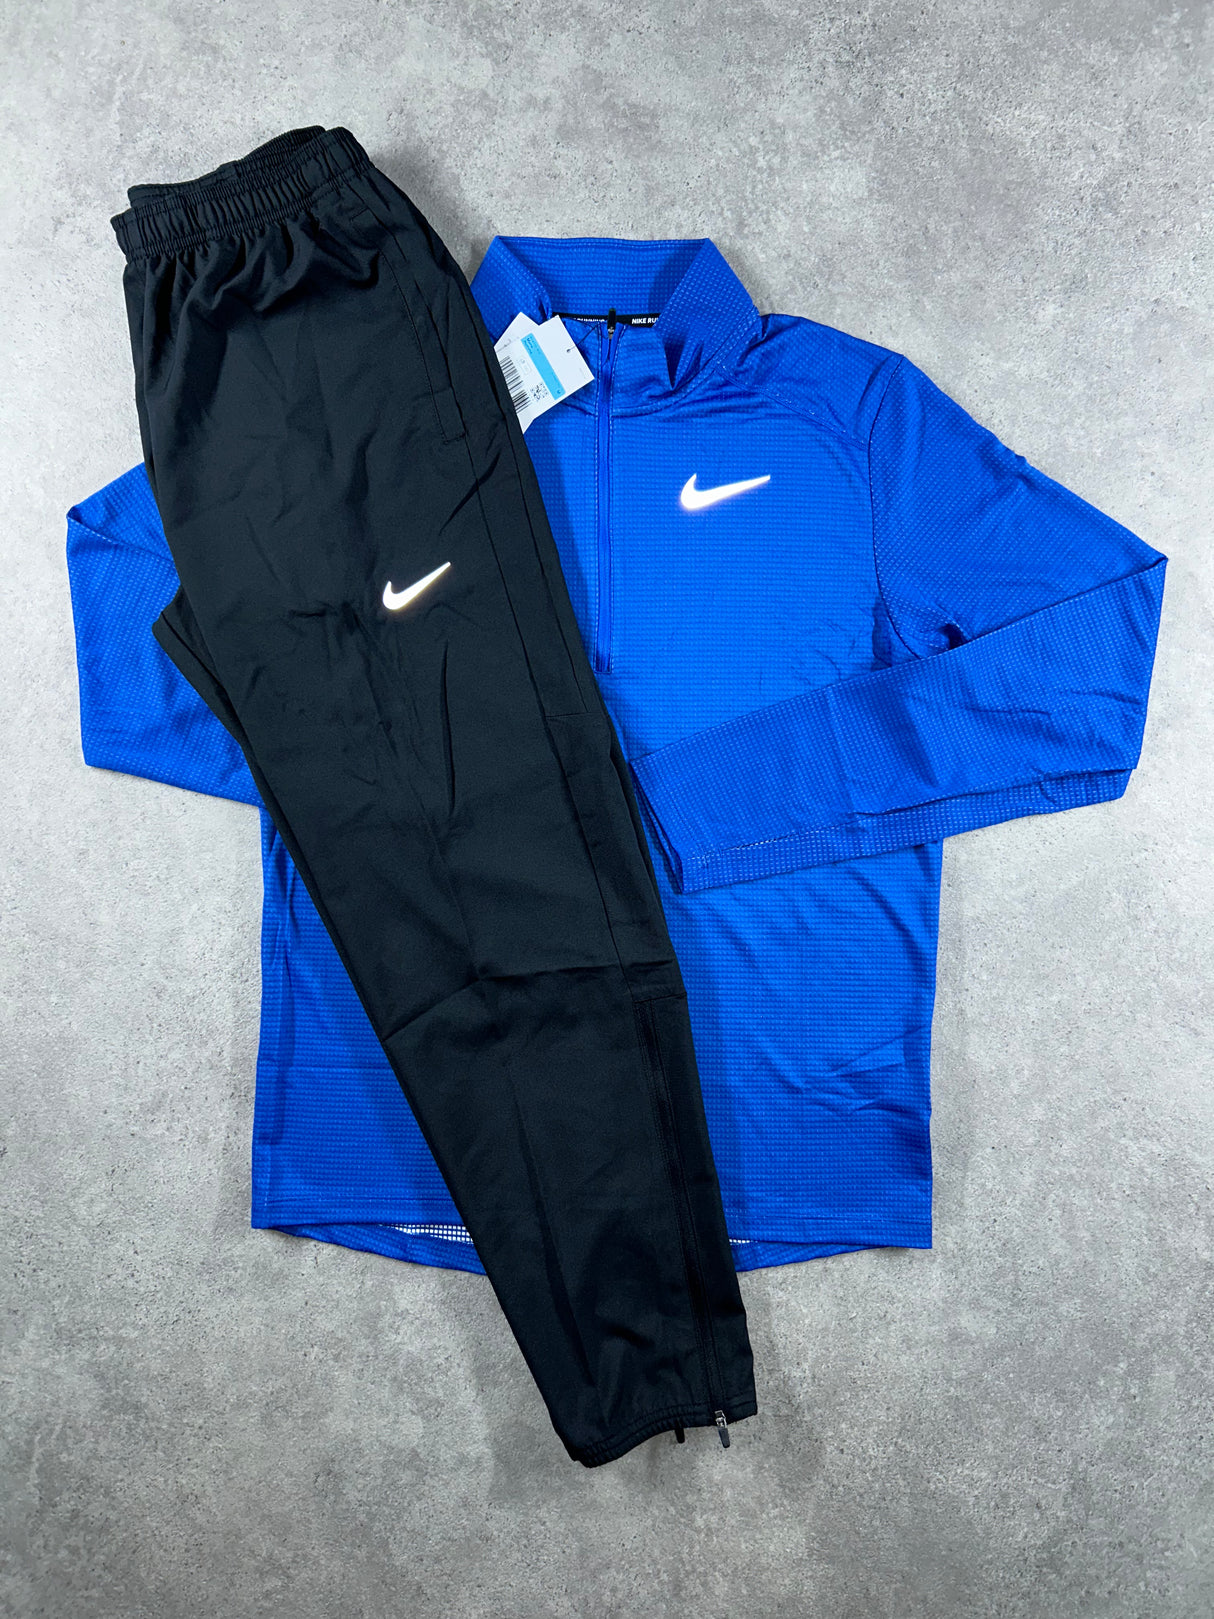 Nike - Challenger Tracksuit - Blue/Black